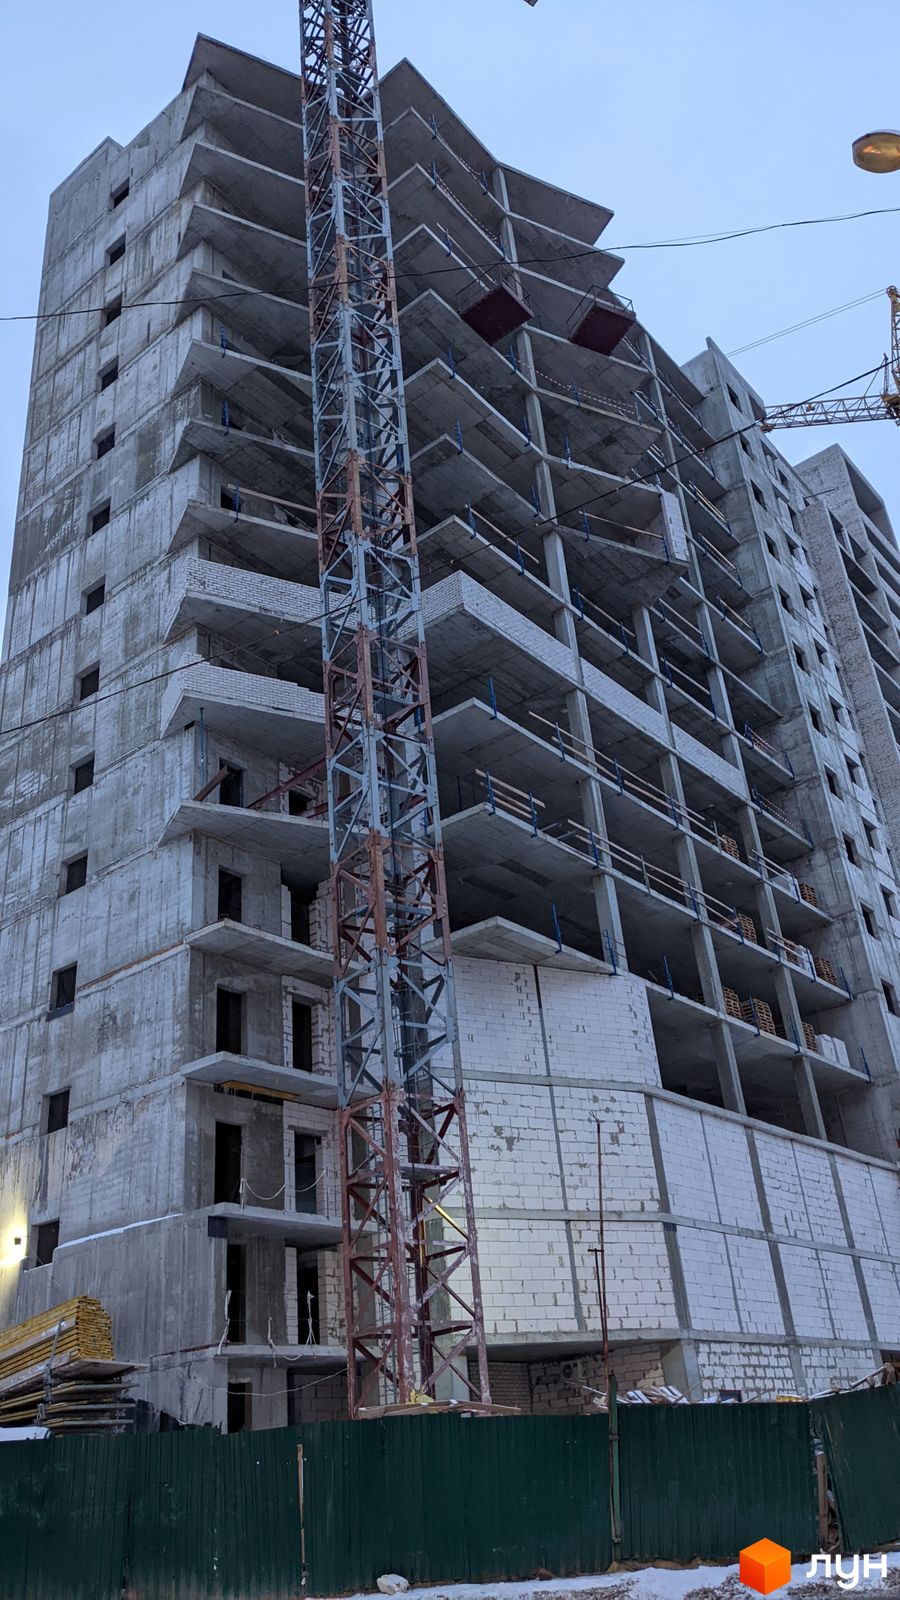 Моніторинг будівництва ЖК Овис - Ракурс 5, січень 2022